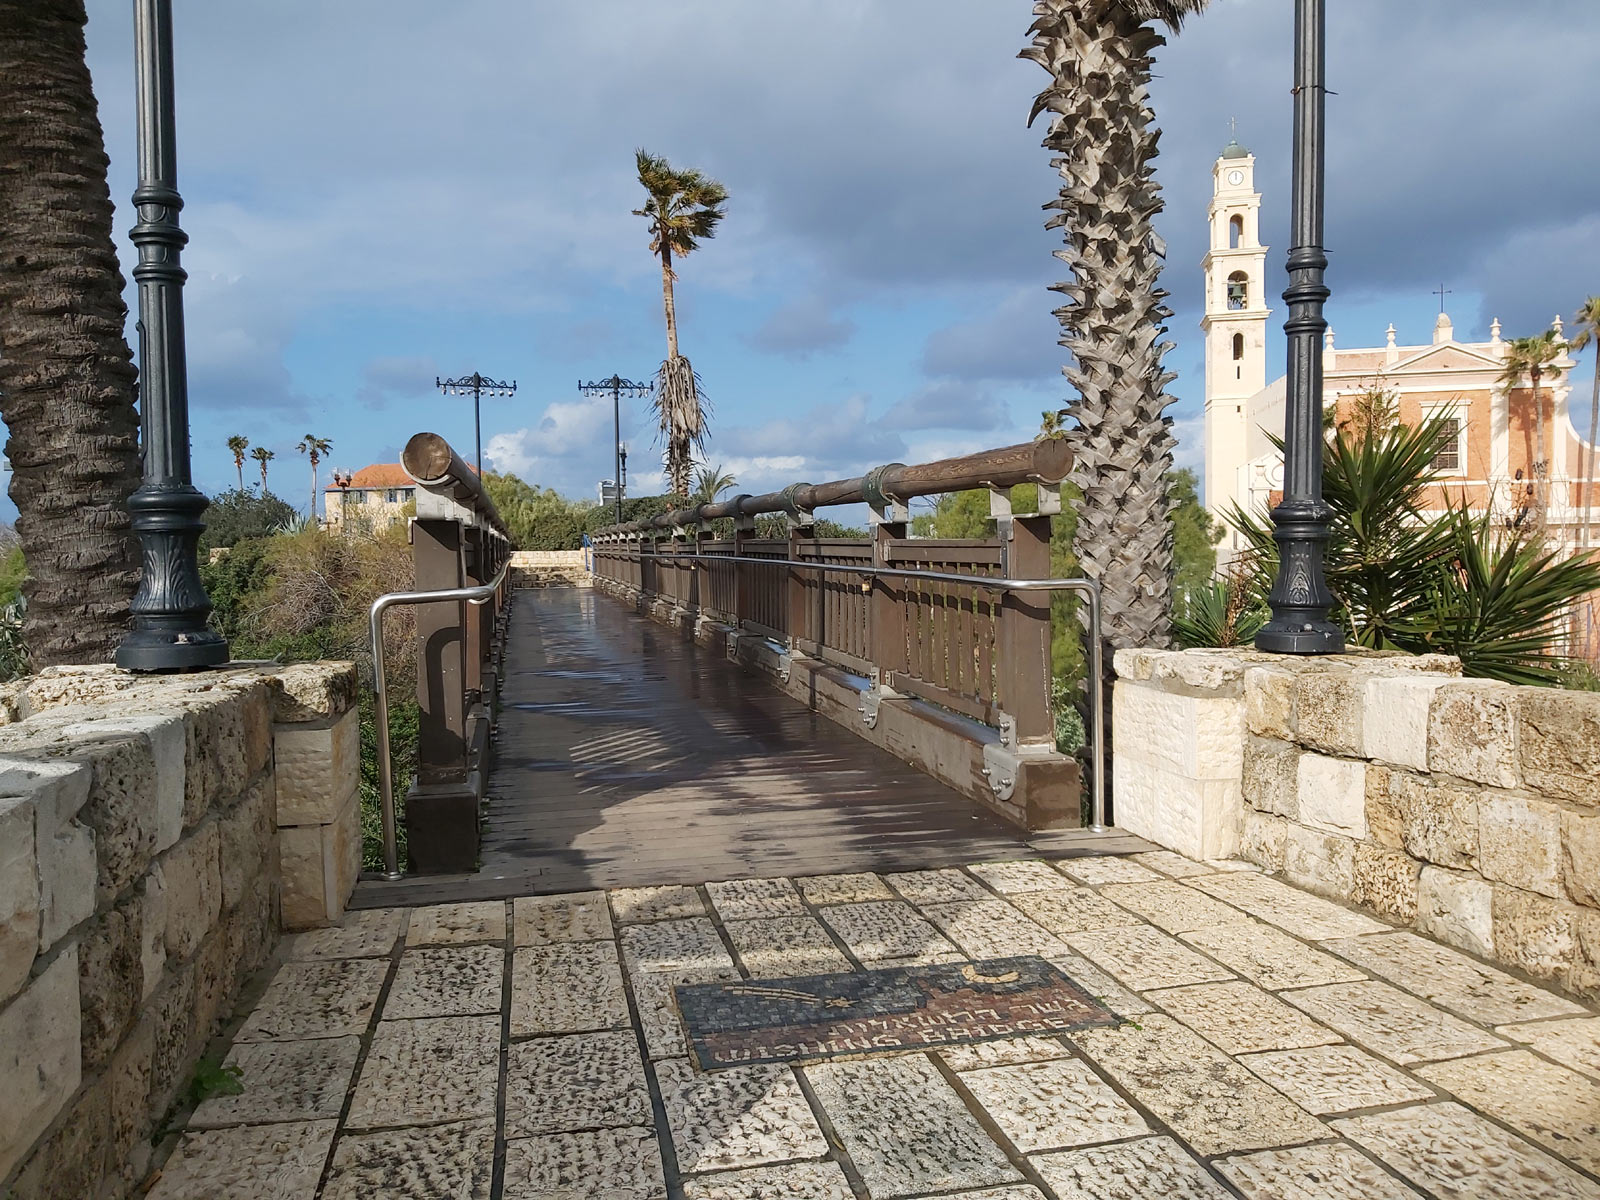 Old Jaffa - Wishing Bridge